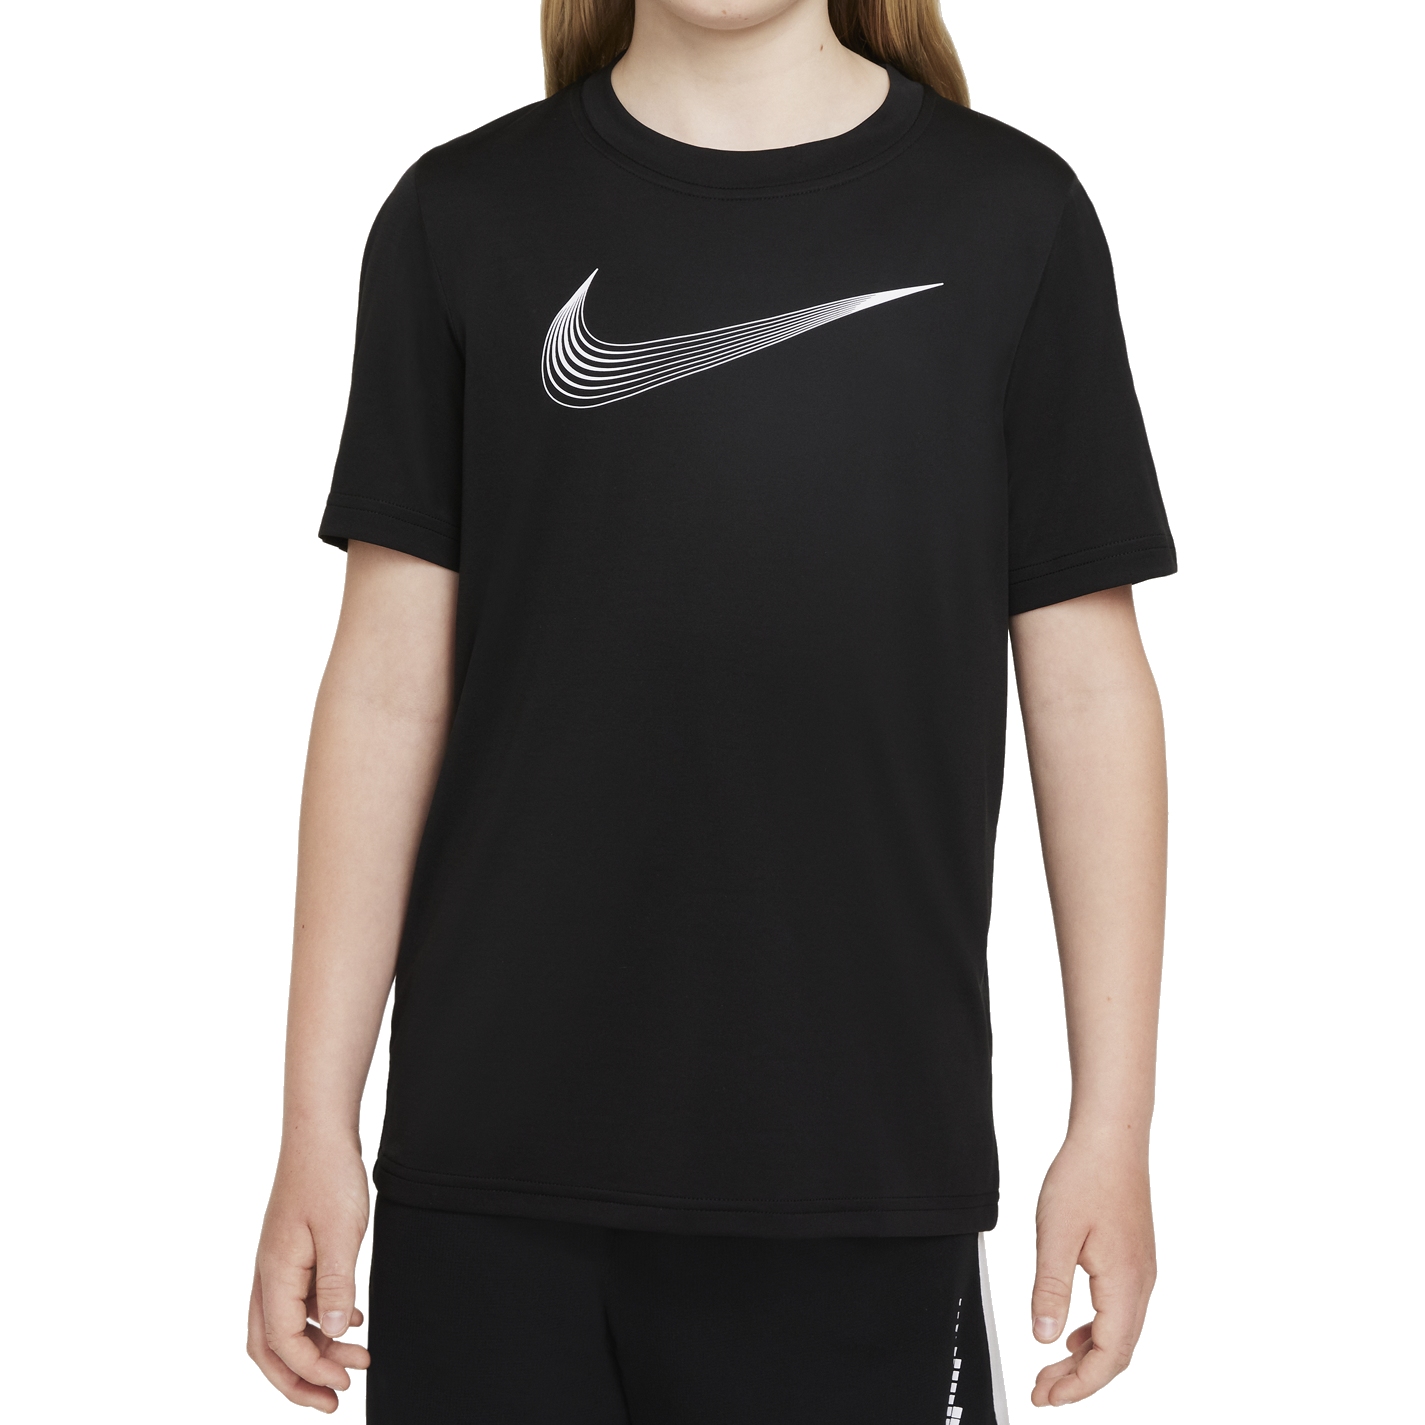 Produktbild von Nike Dri-FIT Kurzarm-Trainingsoberteil für ältere Kinder - schwarz/weiss DM8535-010